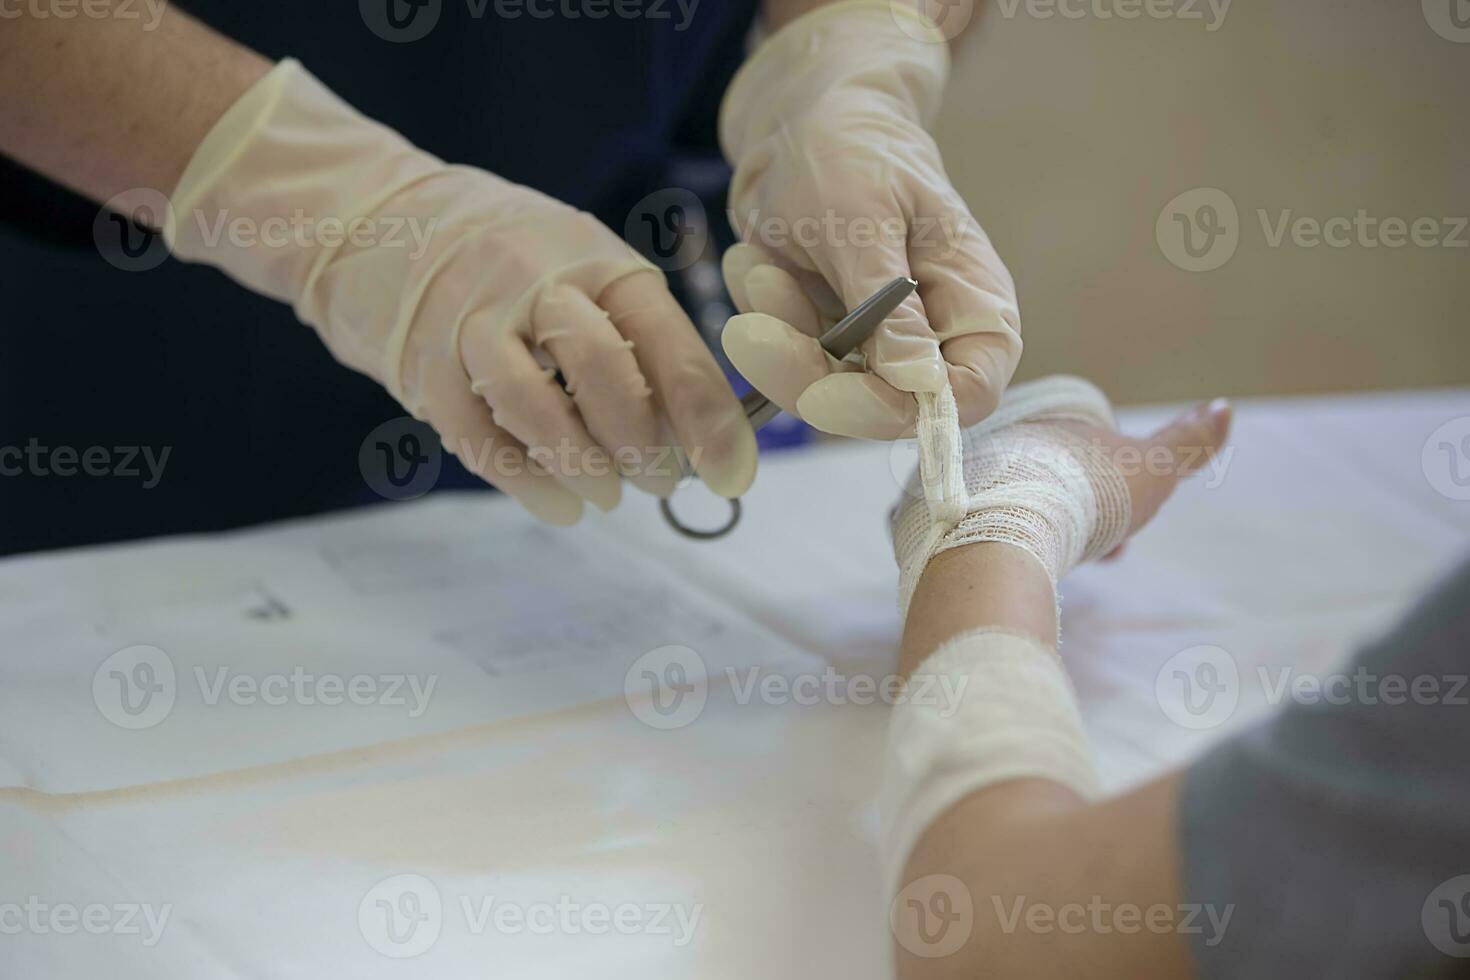 de dokter banden de patiënten hand- met een medisch verband. foto